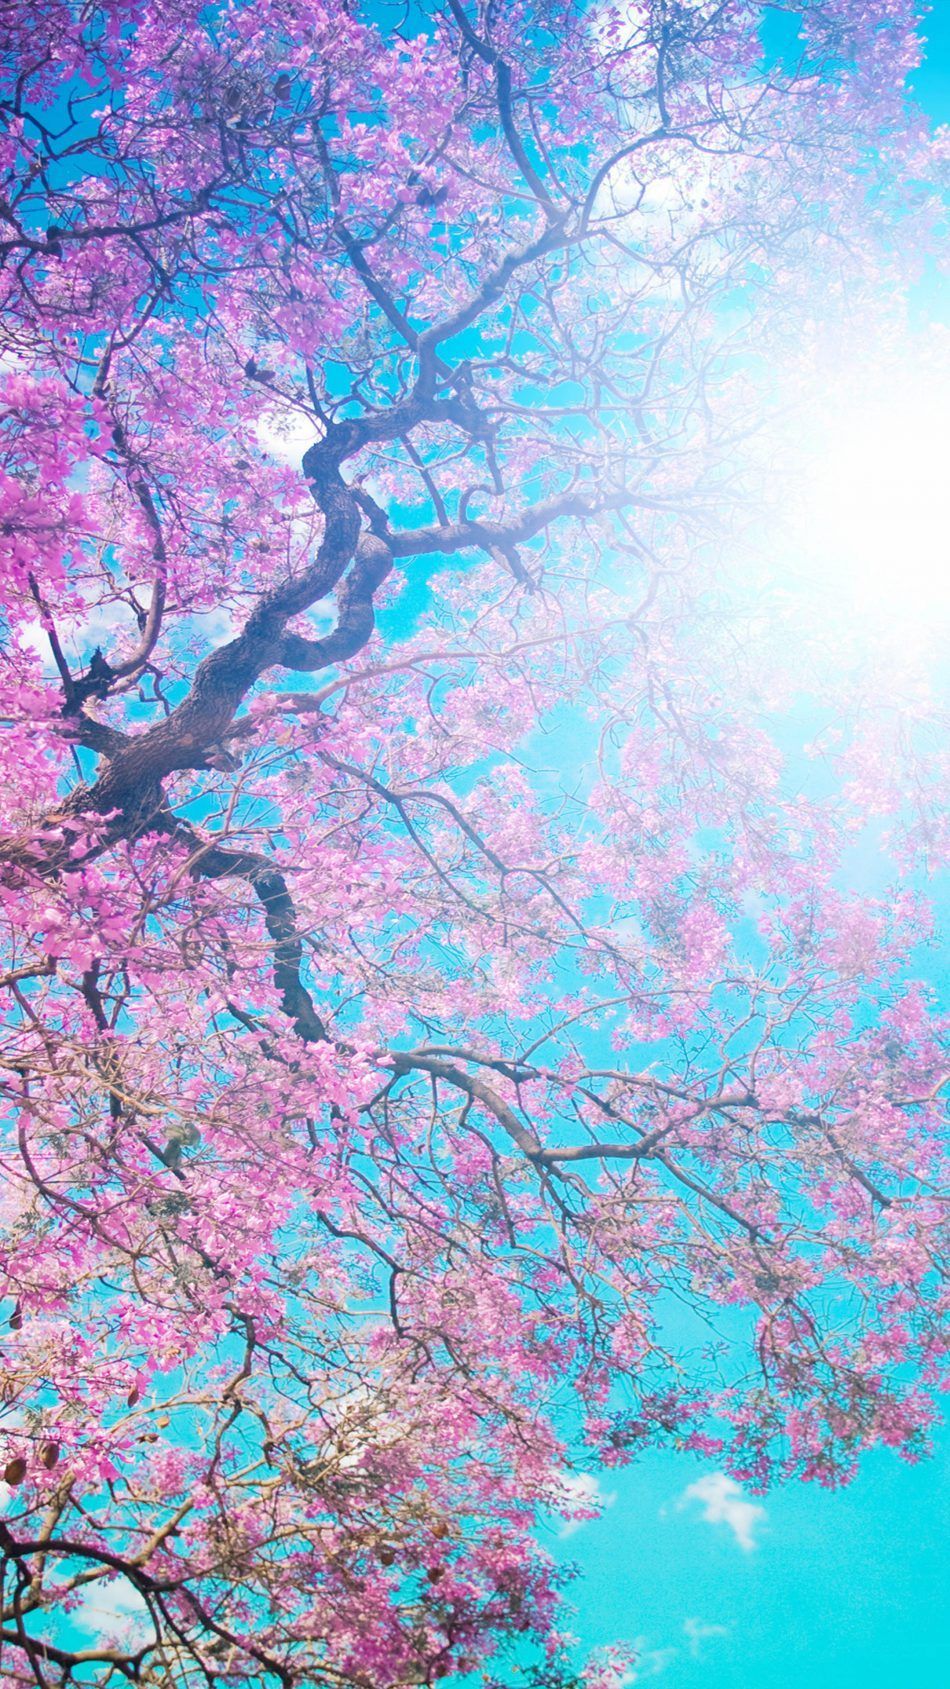 Tree Sunny Spring Day. Spring wallpaper, Spring desktop wallpaper